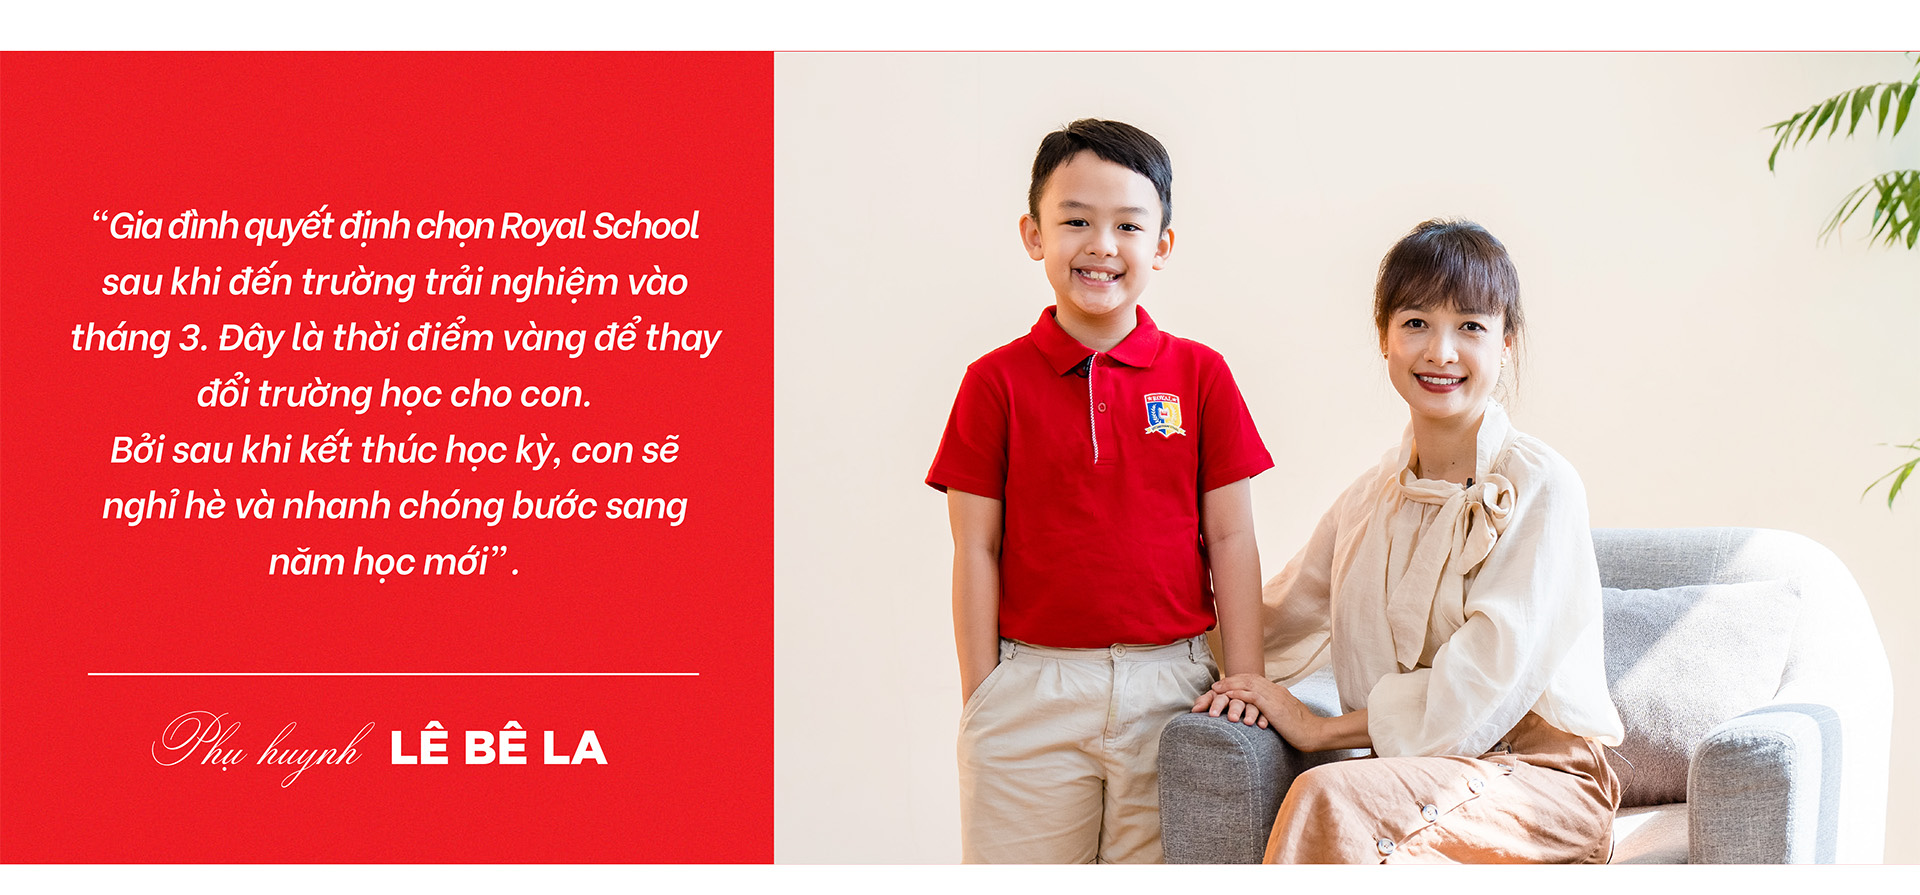 Royal School nâng tầm tài năng với môi trường song ngữ - Ảnh 10.